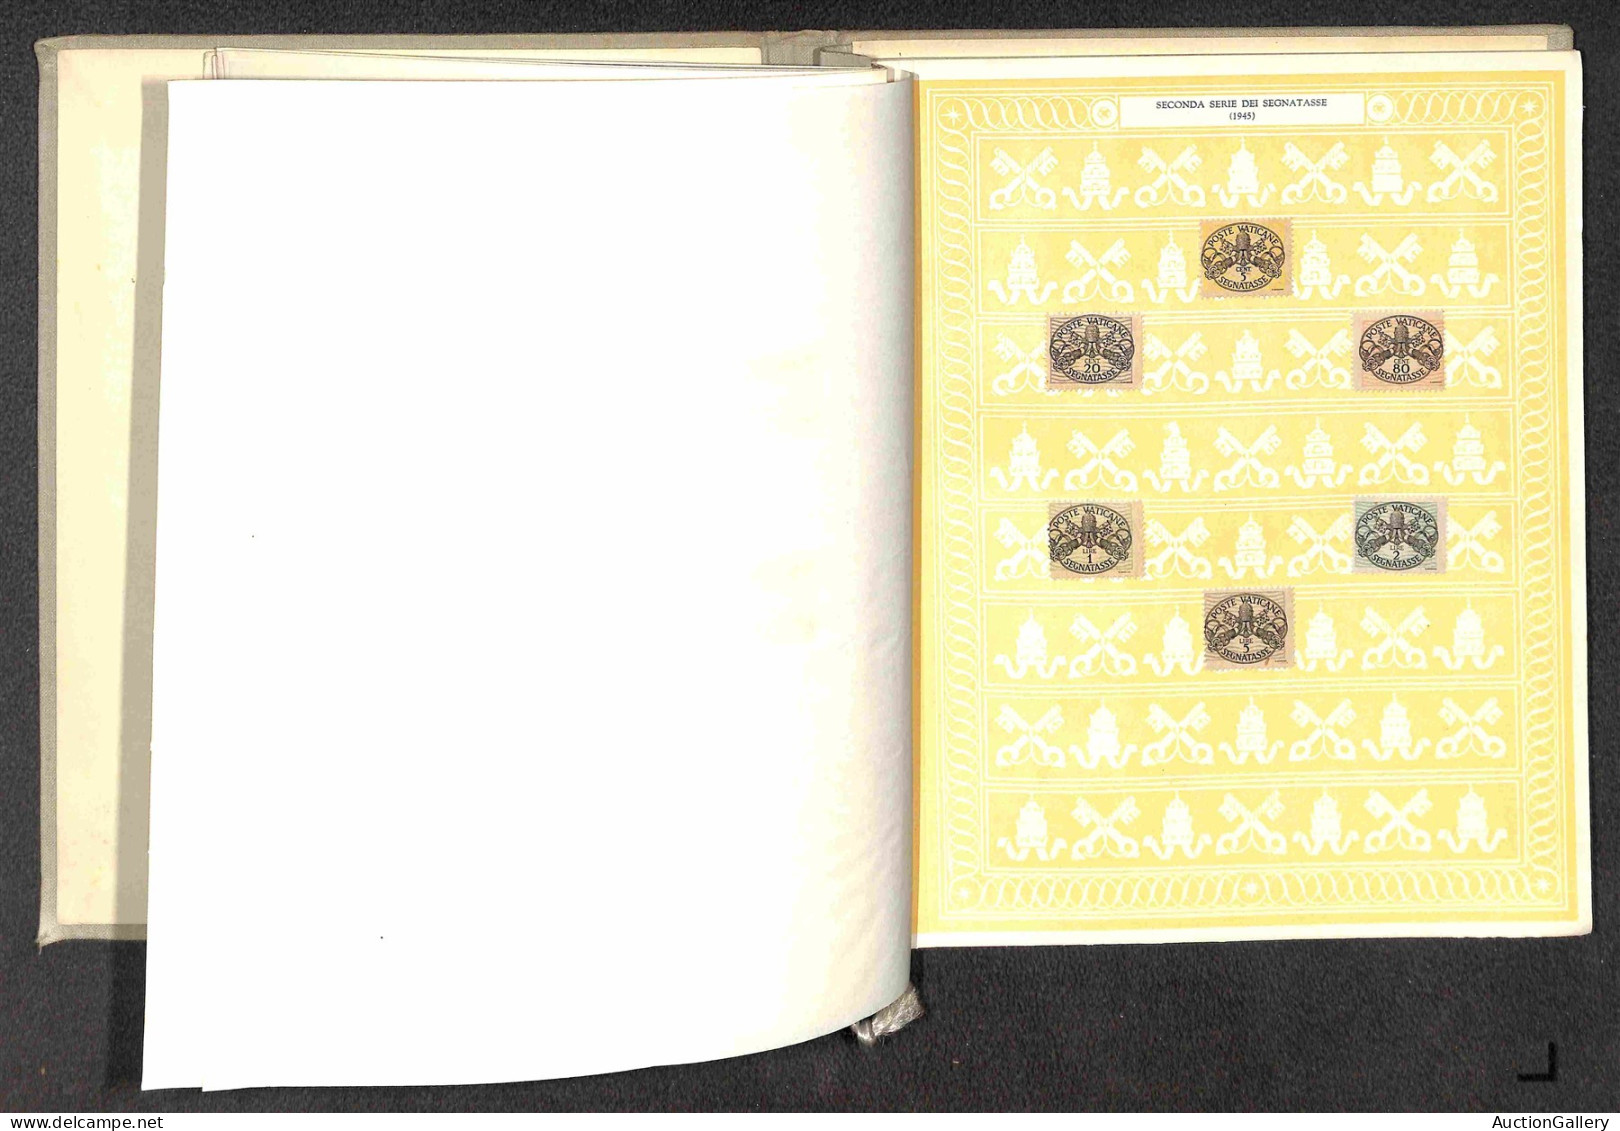 Lotti&Collezioni - VATICANO - 1942/1950 - Splendido ed elegante libro "Stato della Città del Vaticano" con le emissioni 